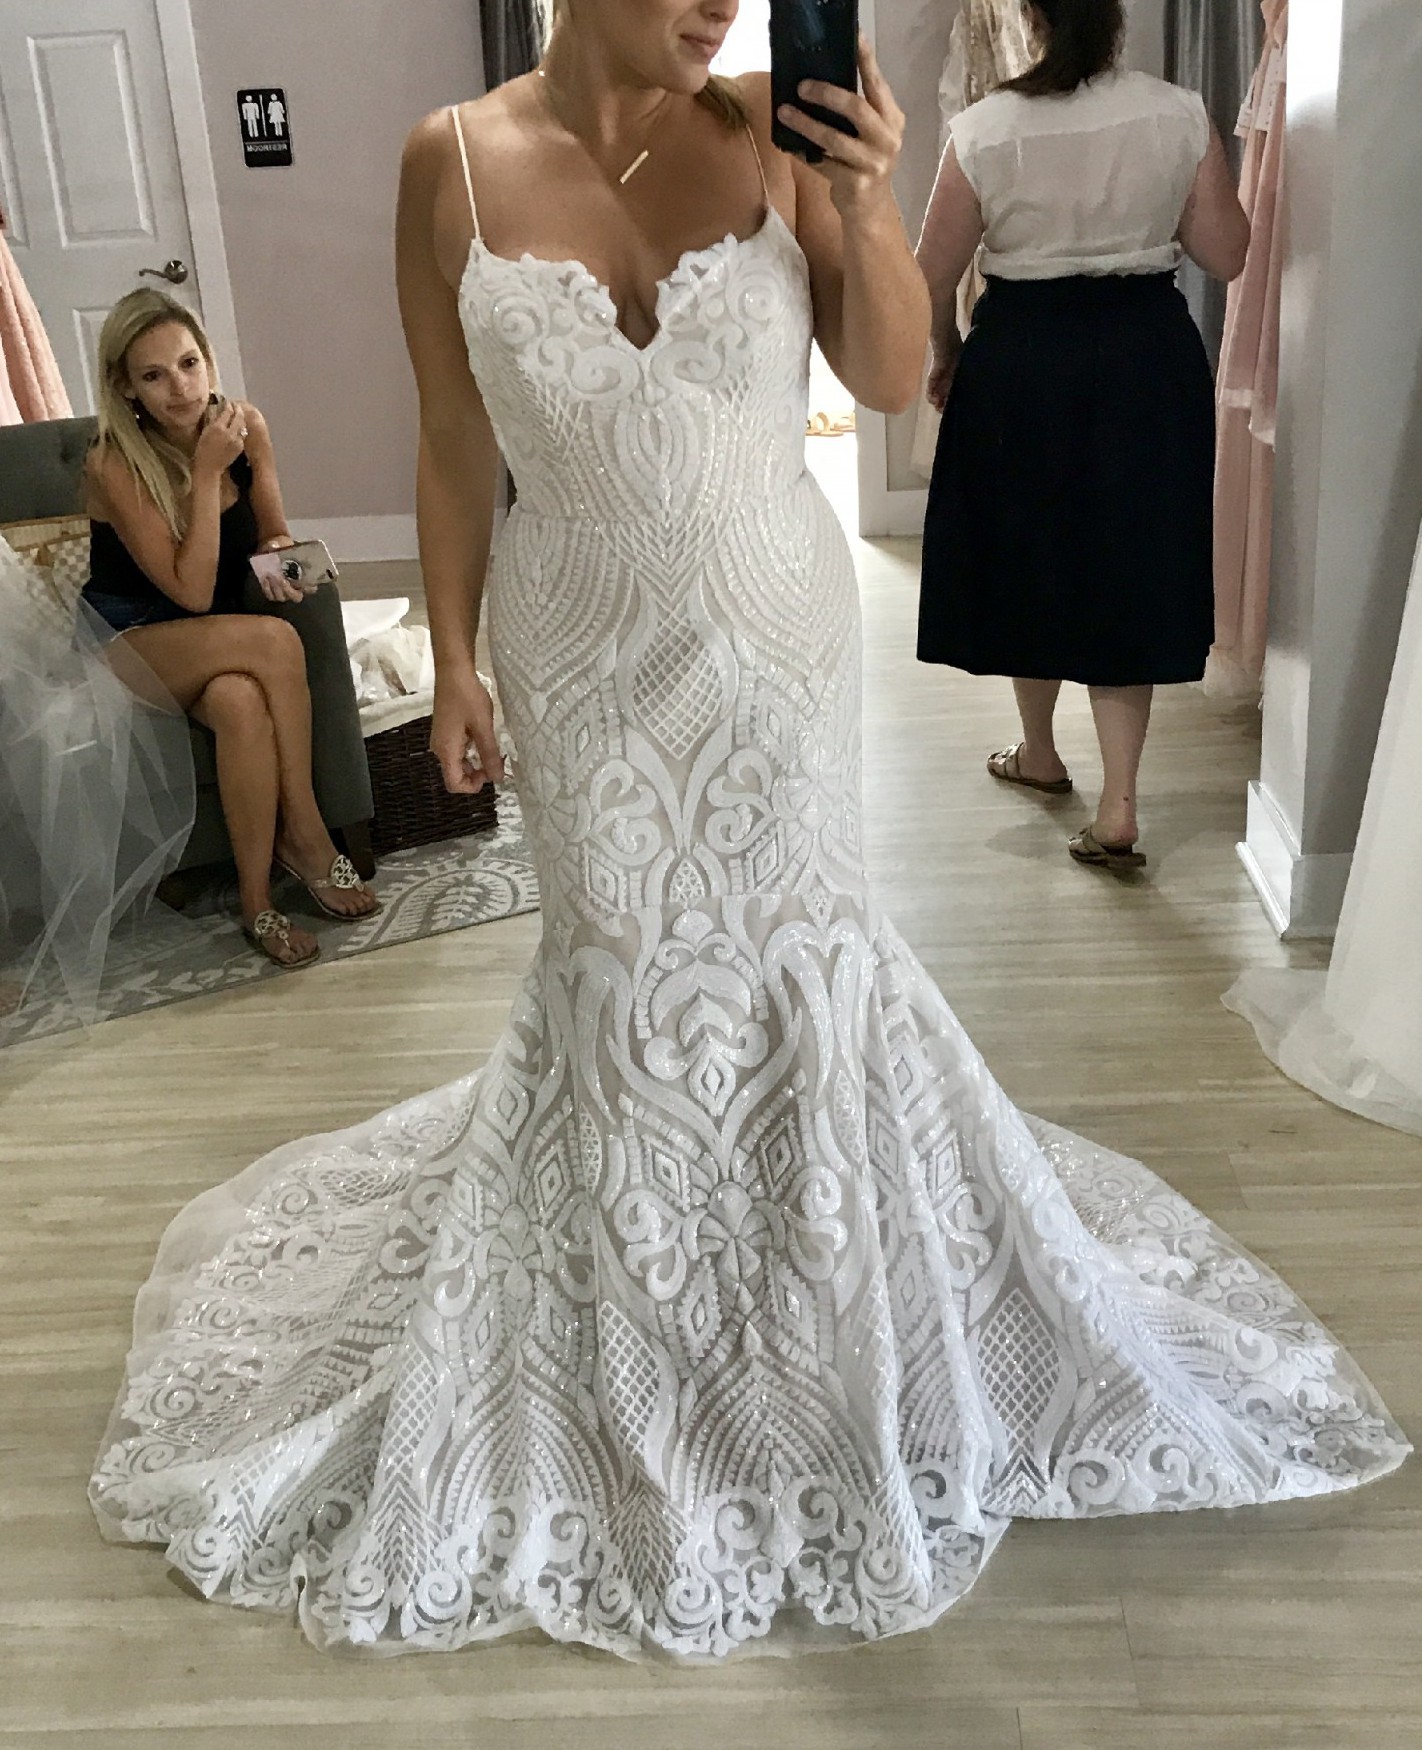 Blush by Hayley Paige West Second Hand Wedding Dress Save 42% - Stillwhite